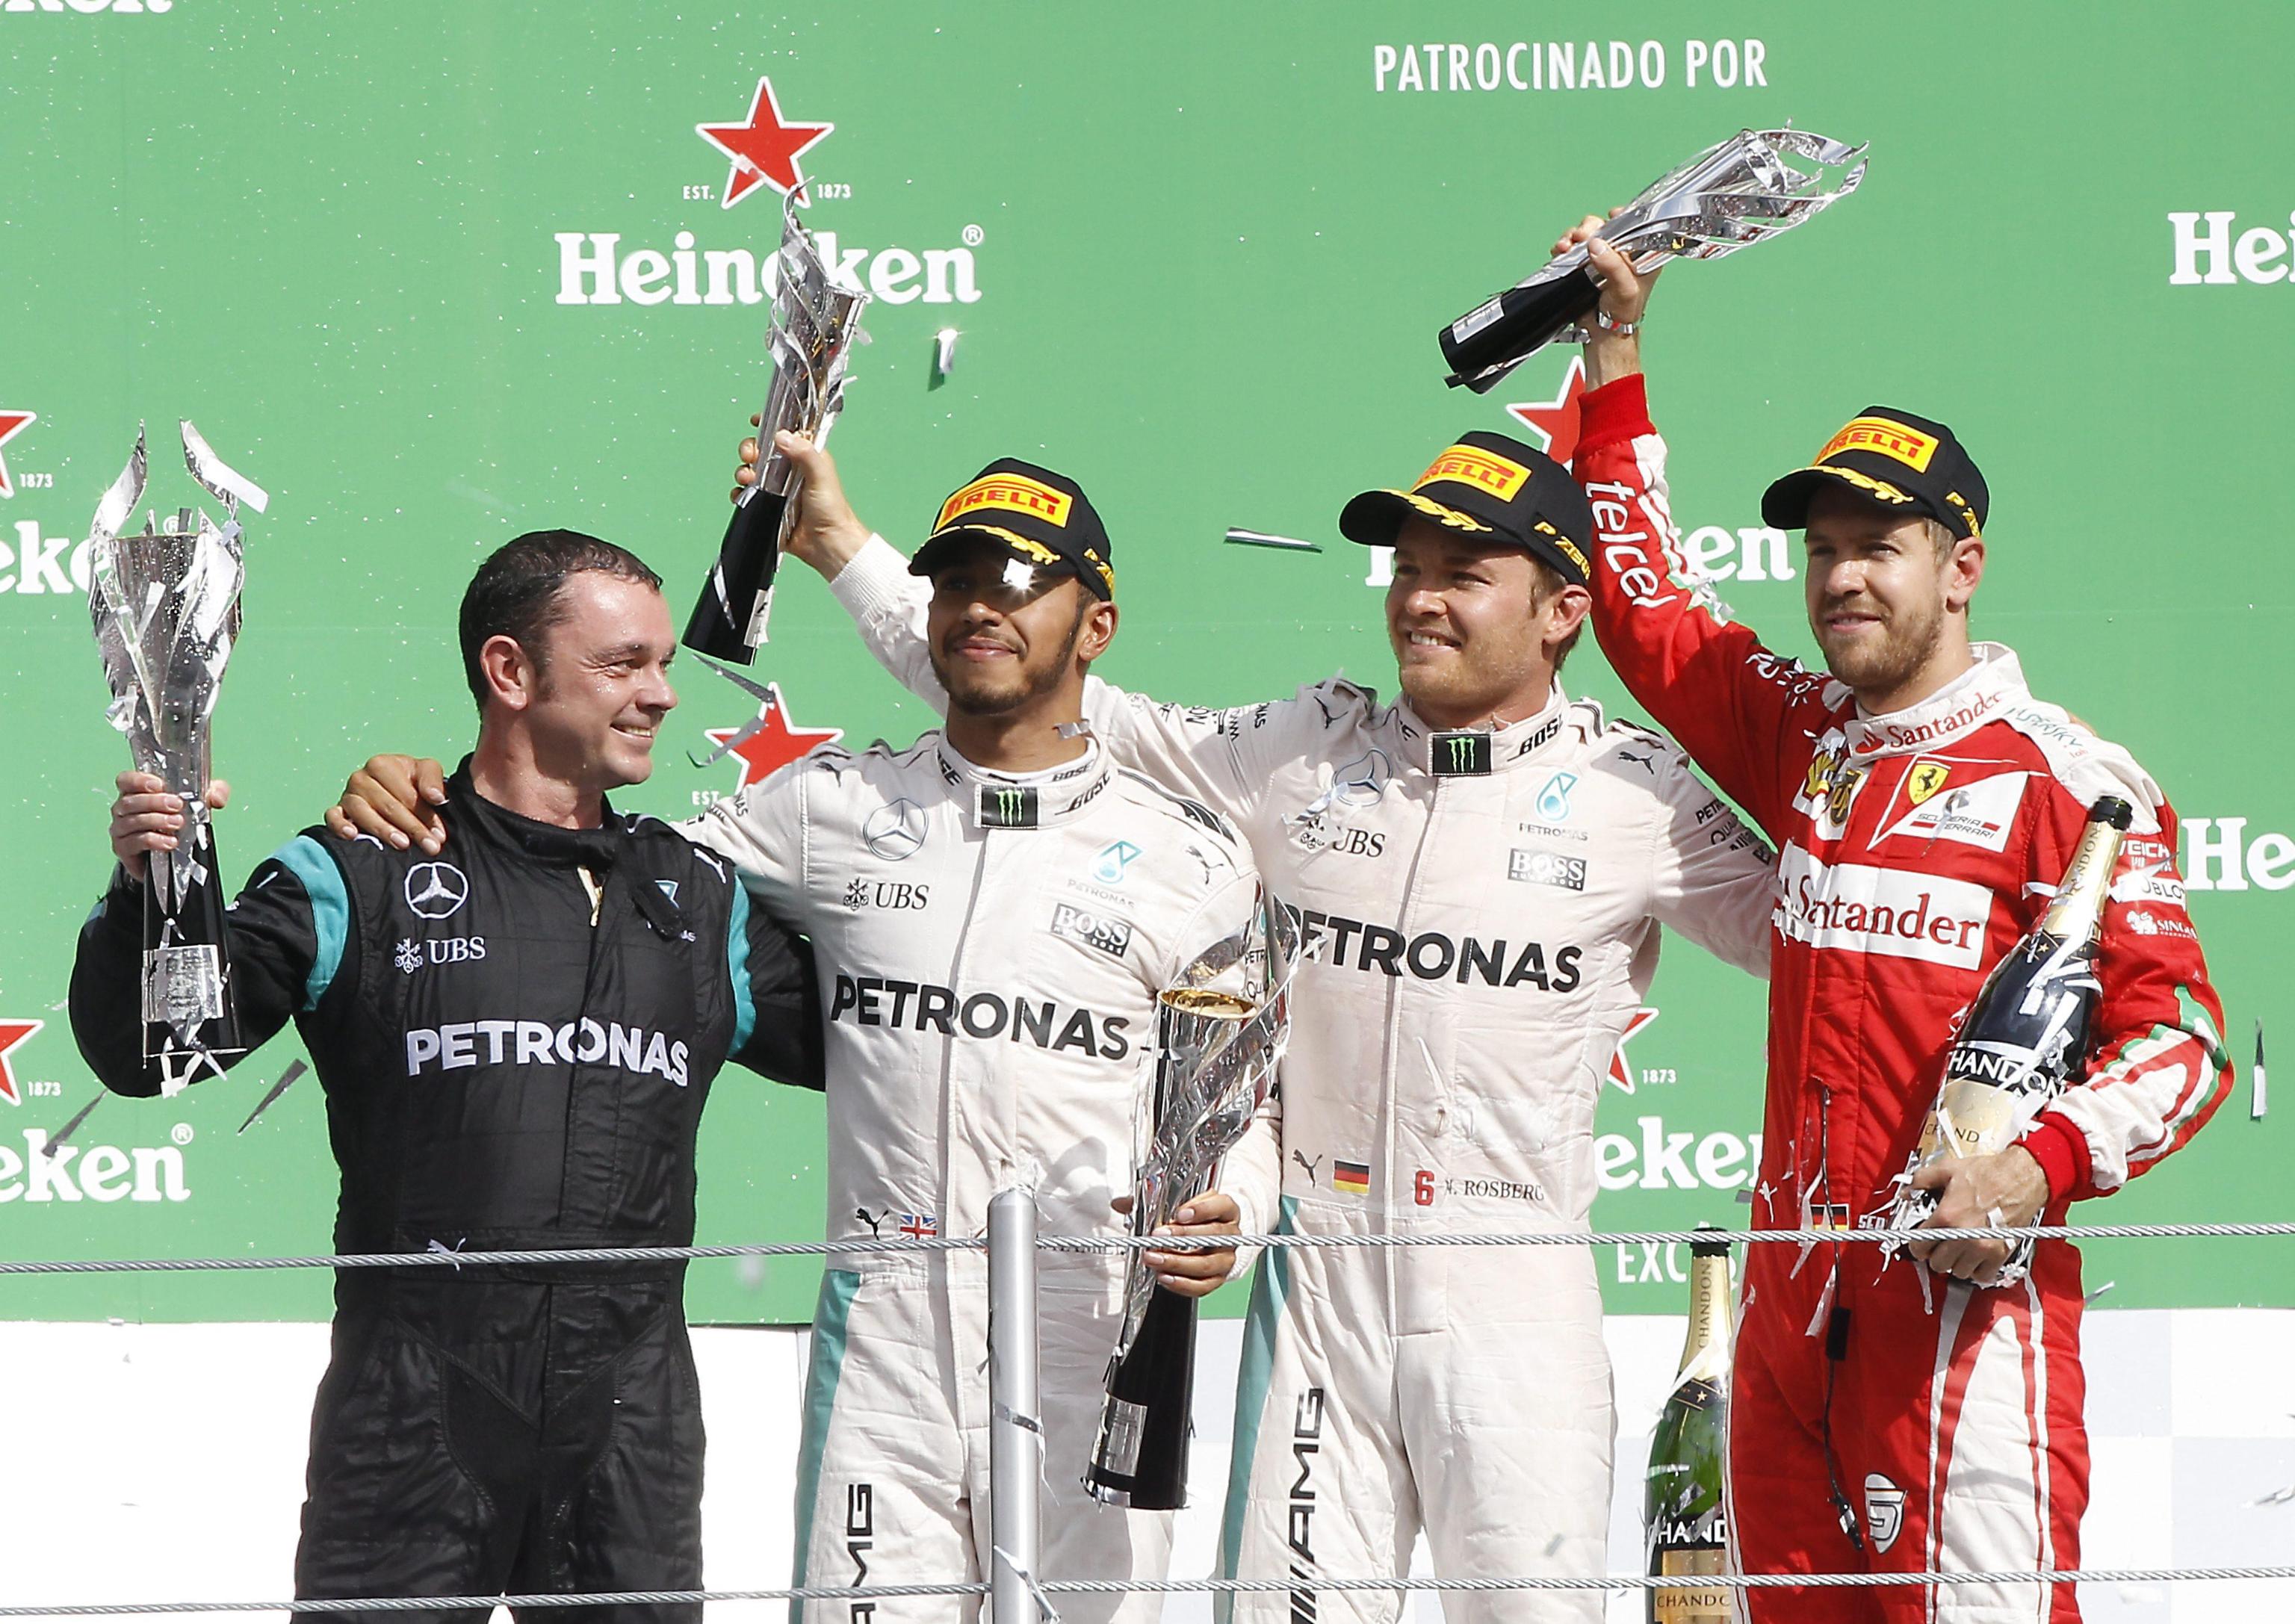 Il podio del Gran Premio del Messico 2016 (foto da: blitzquotidiano.it)